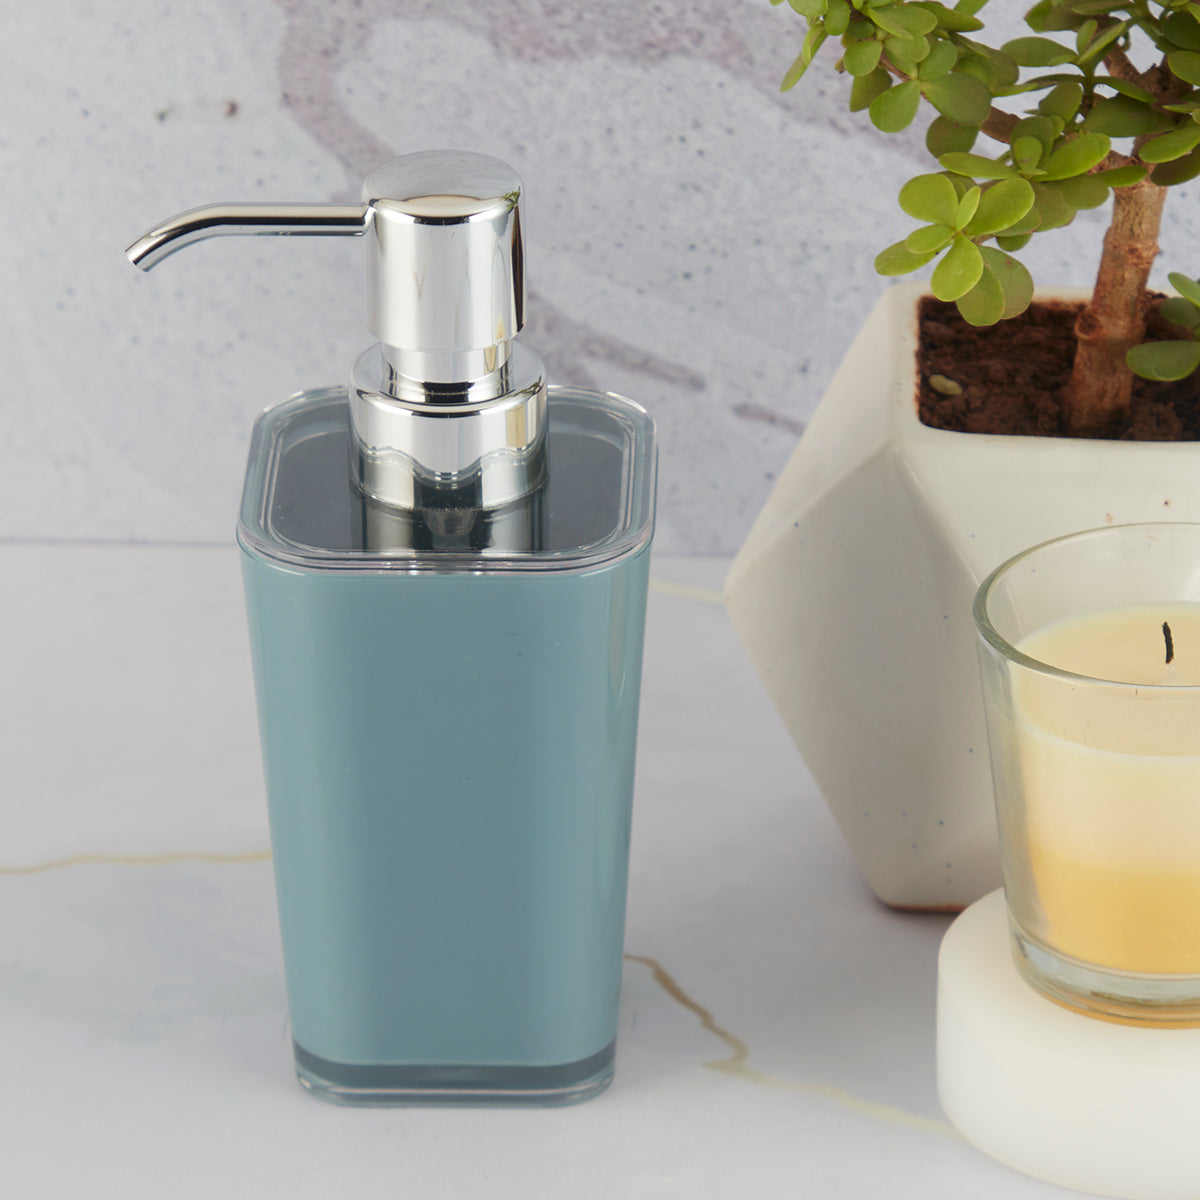 Acrylic Soap Dispenser Pump for Bathroom for Bath Gel, Lotion, Shampoo (10000)